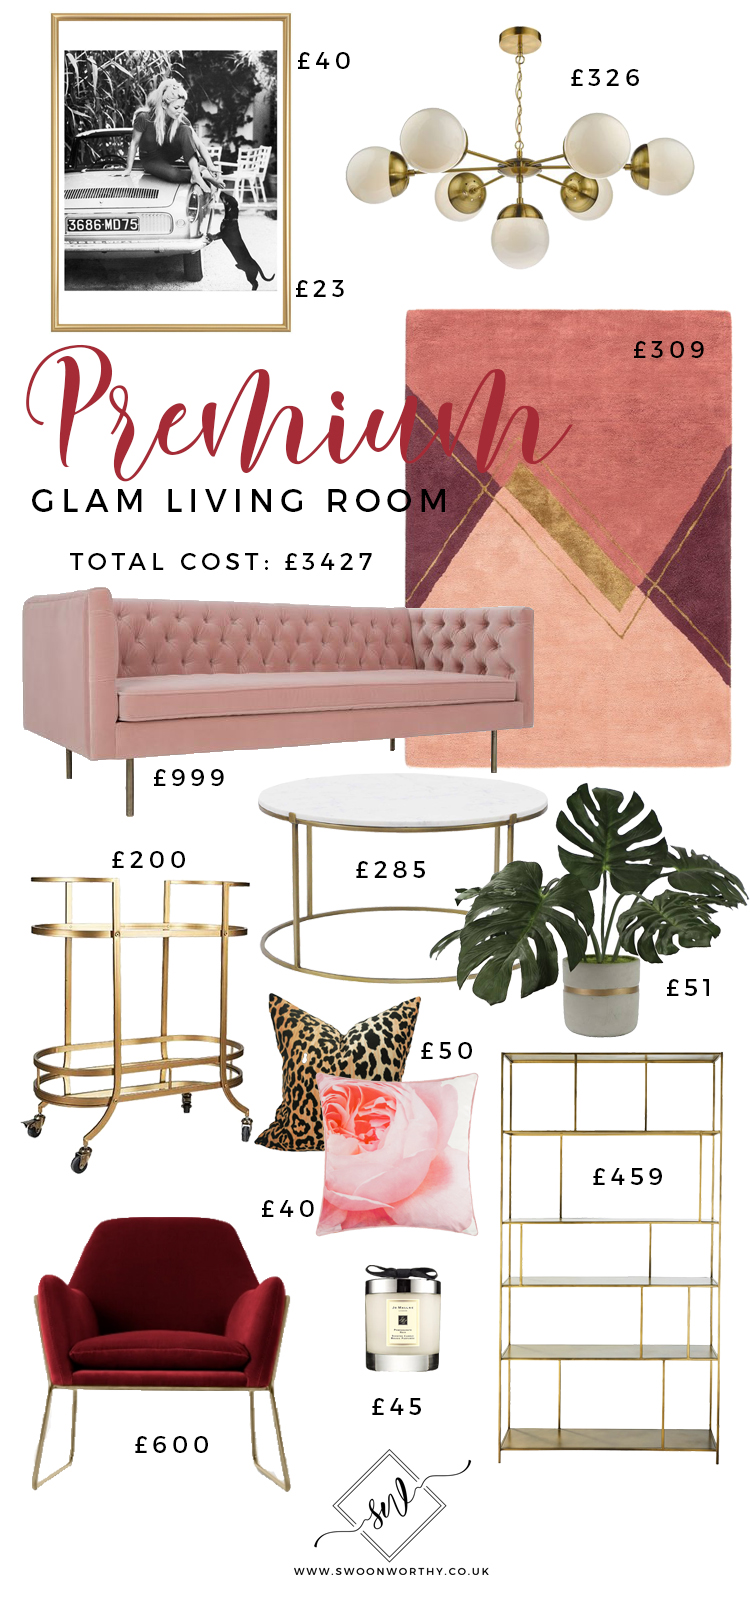 Premium Glam Living Room under £3500